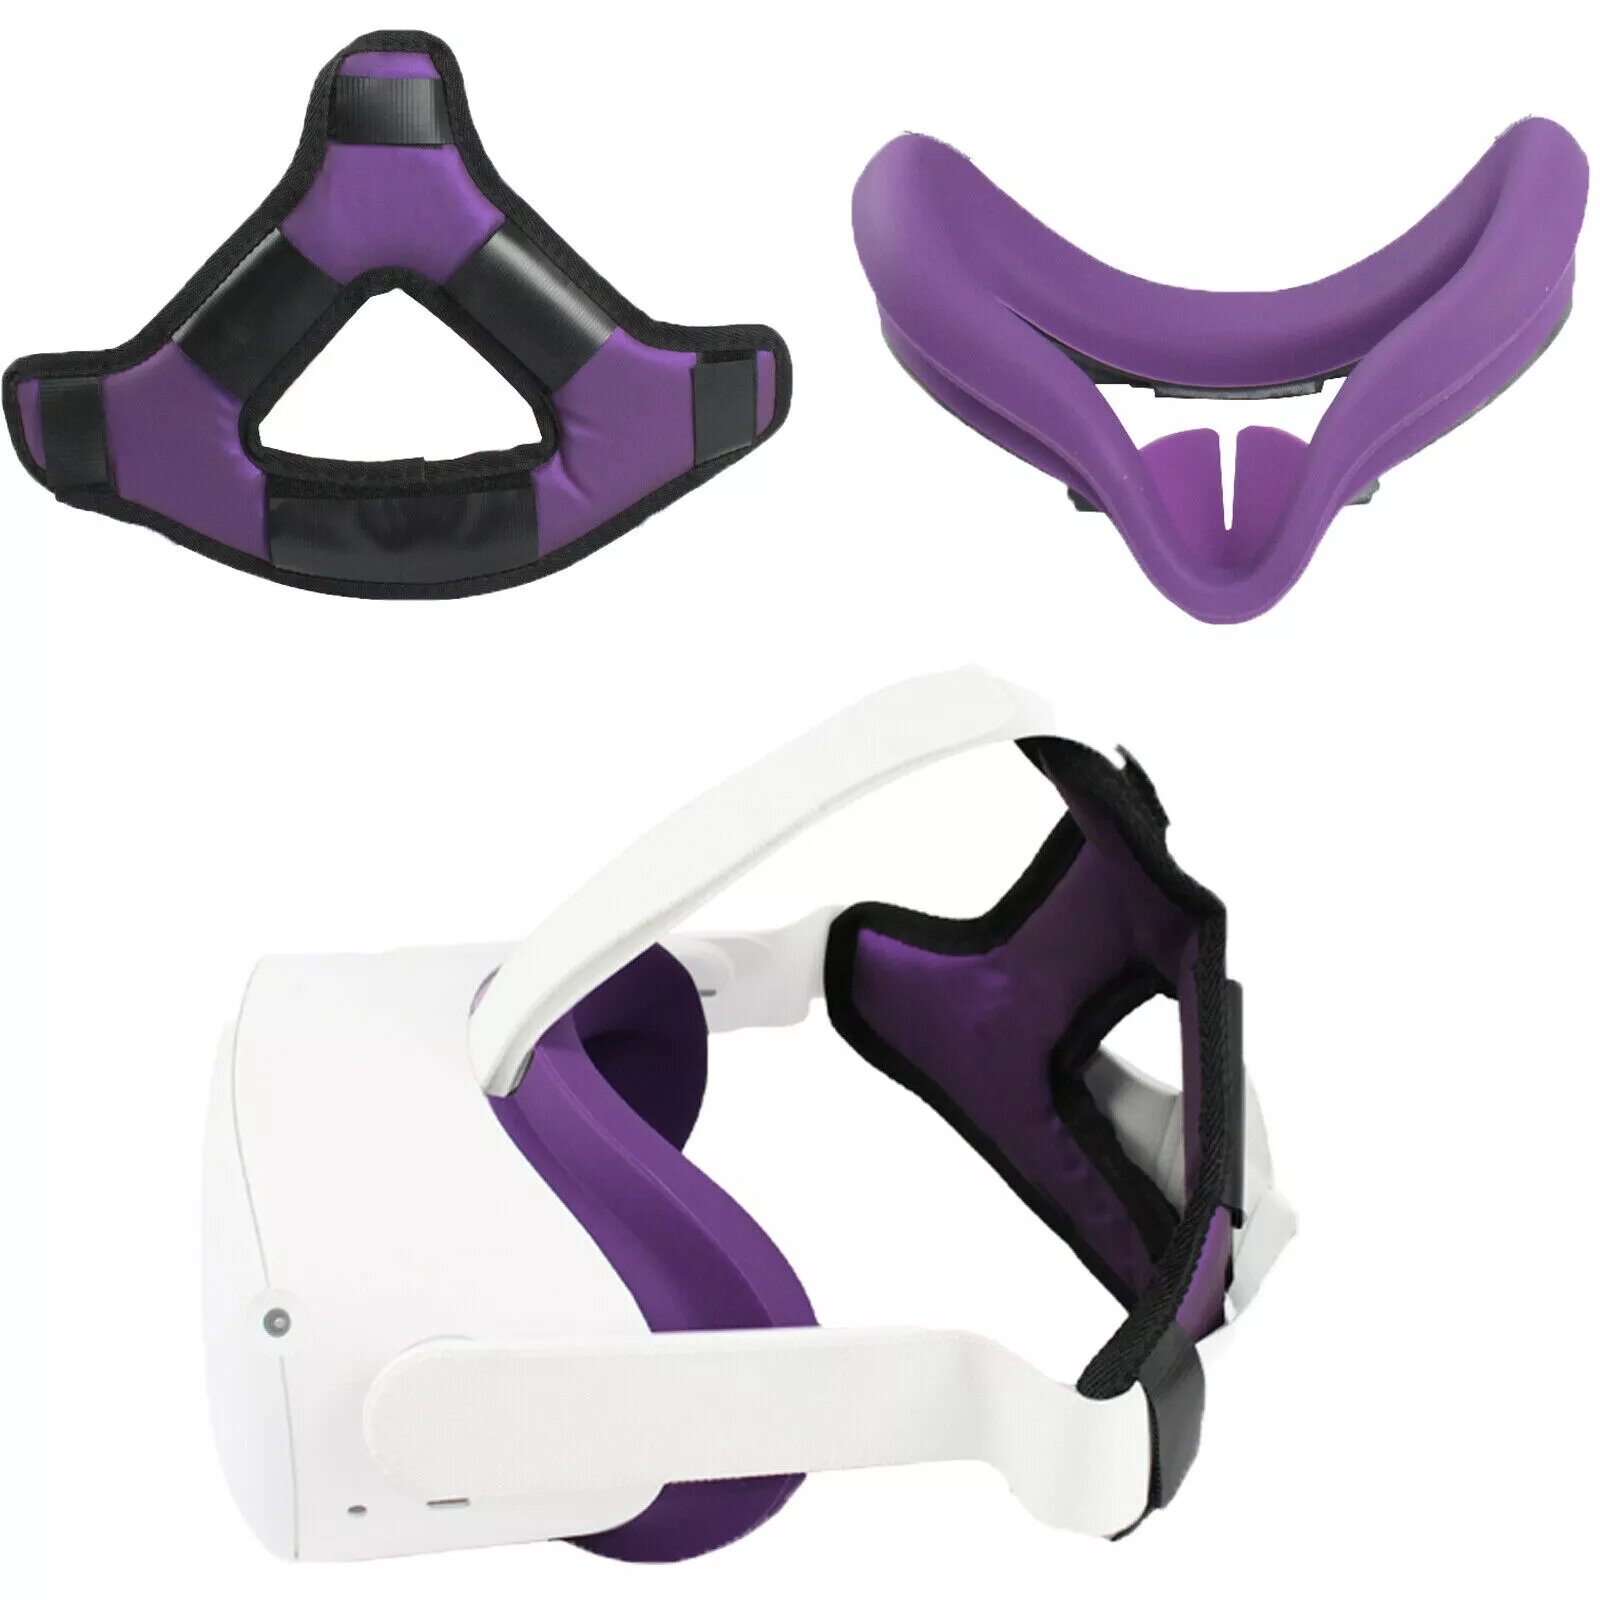 

VR Подушка для гарнитуры для шлема Oculus Quest 2 Повязка на голову для шлема Облегчение головы с пенопластовой подушкой